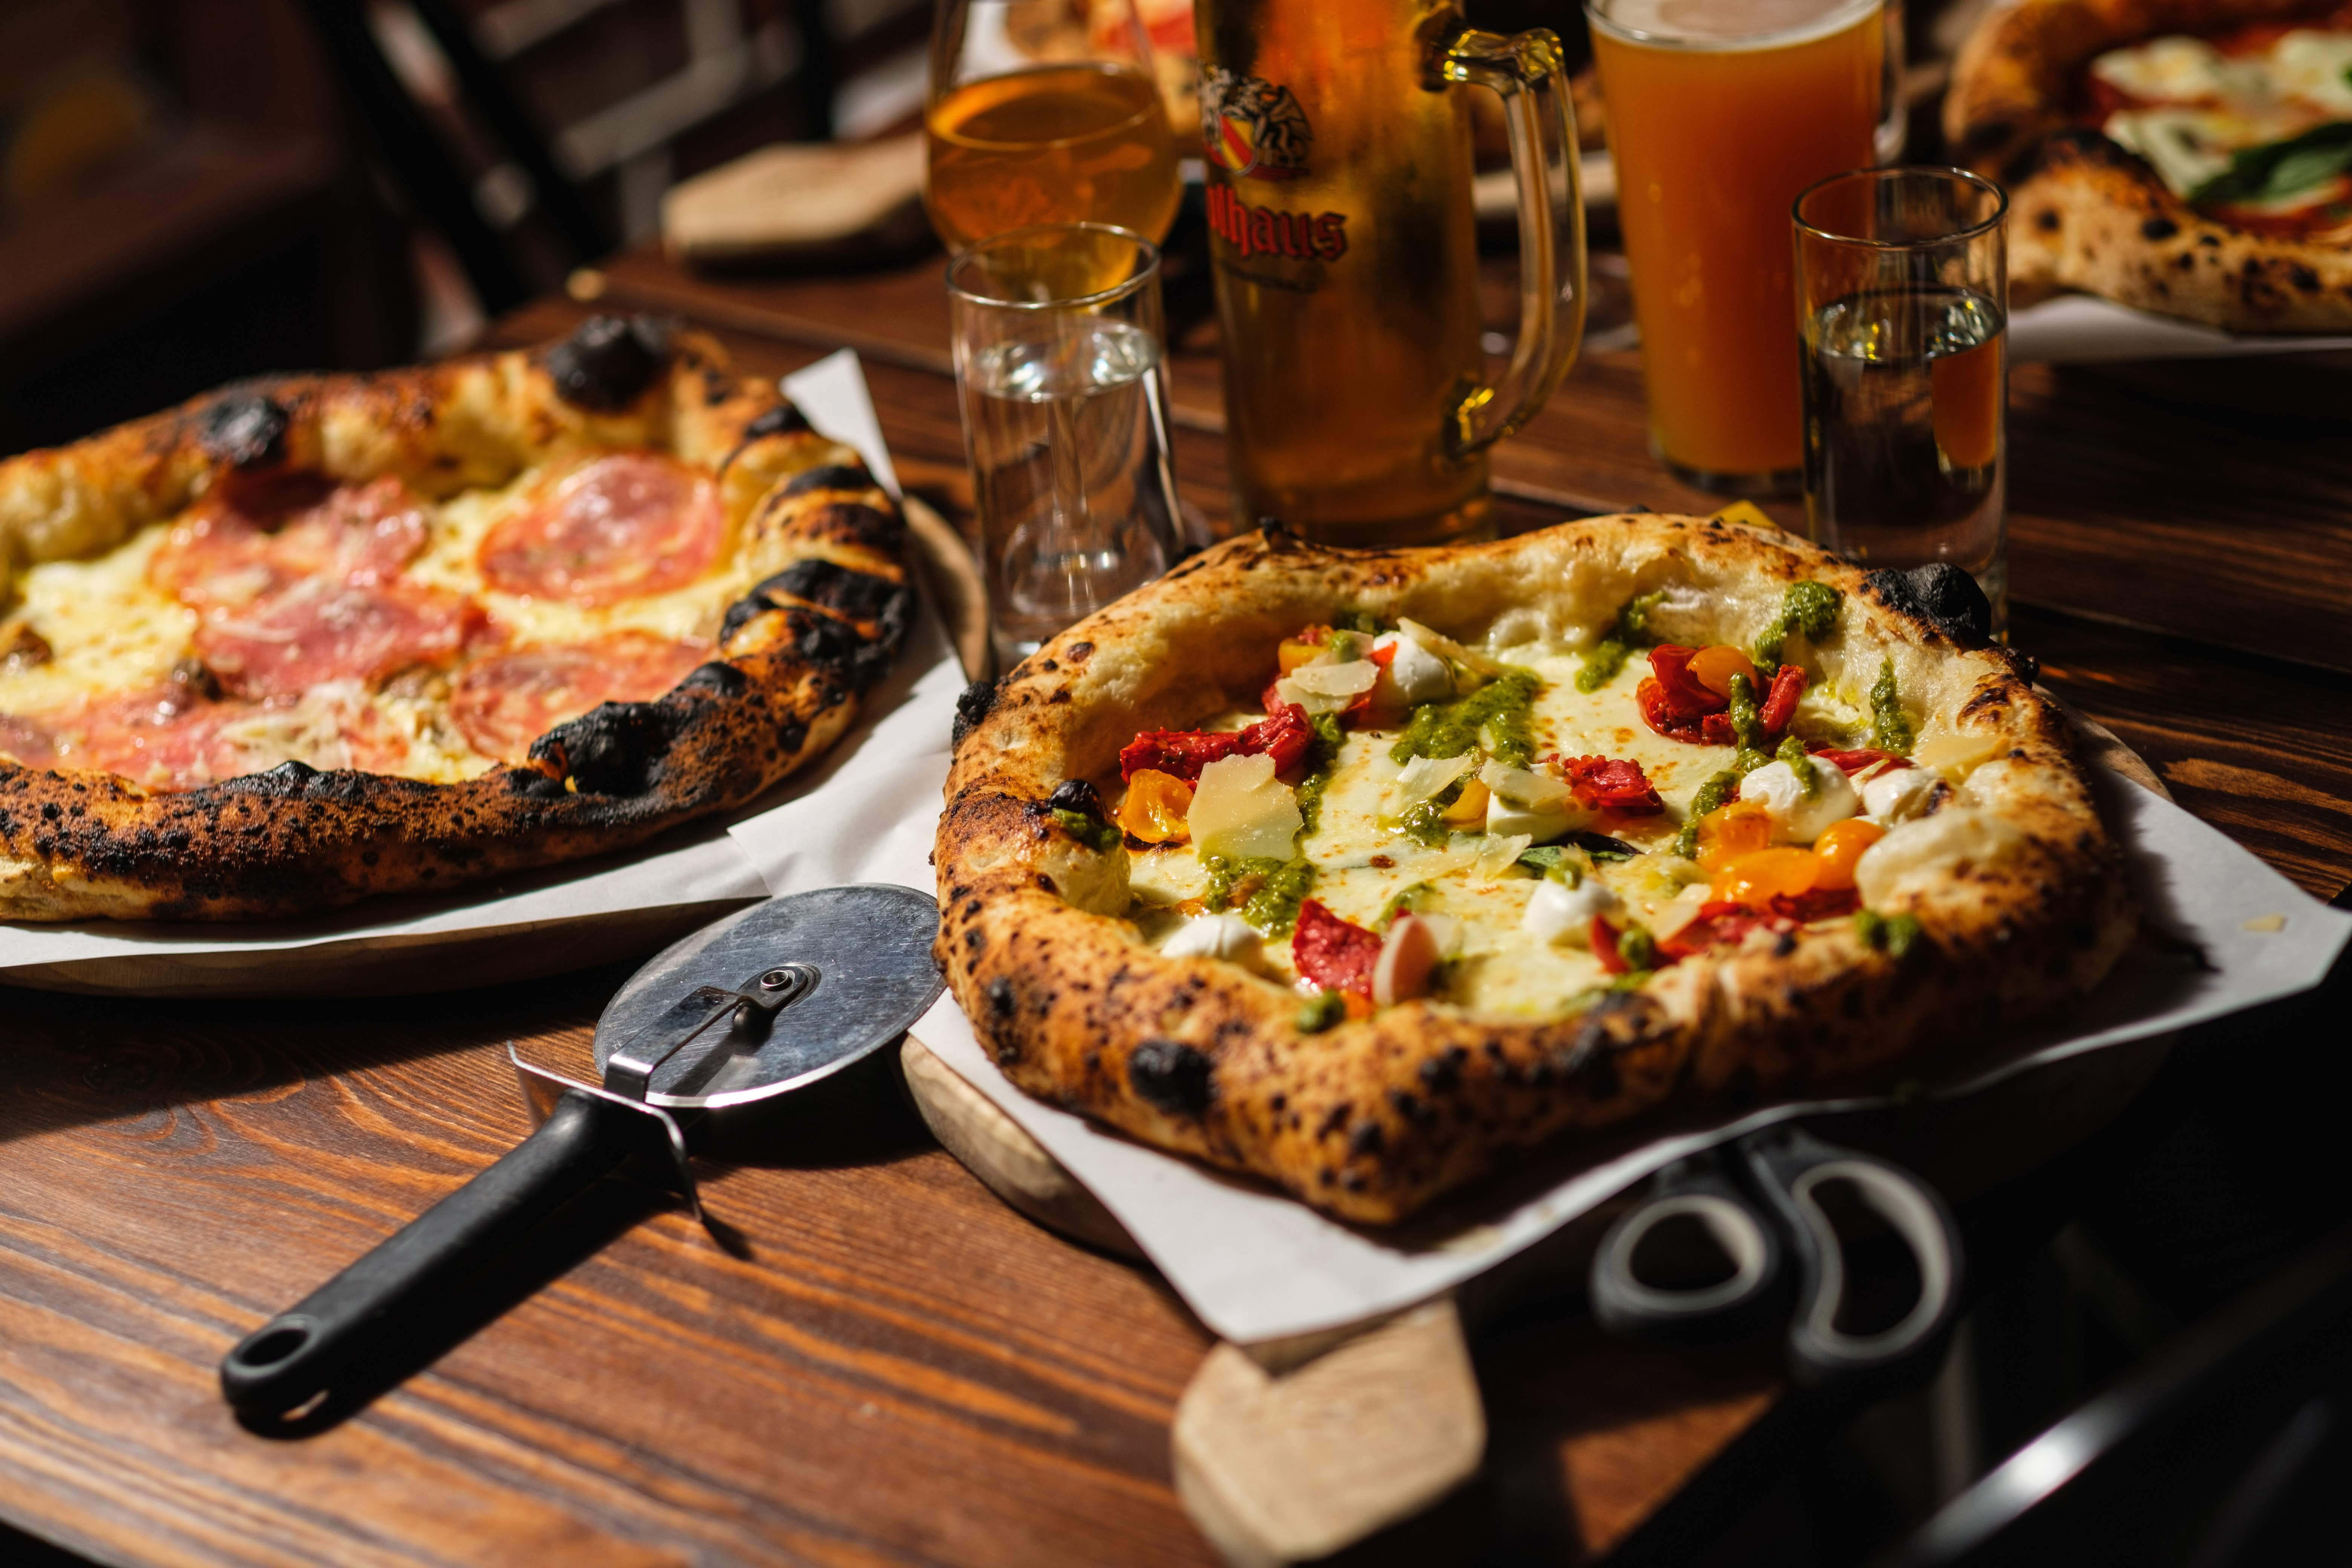 Noi Pizza Saluhallen – Hetaste restaurangerna just nu